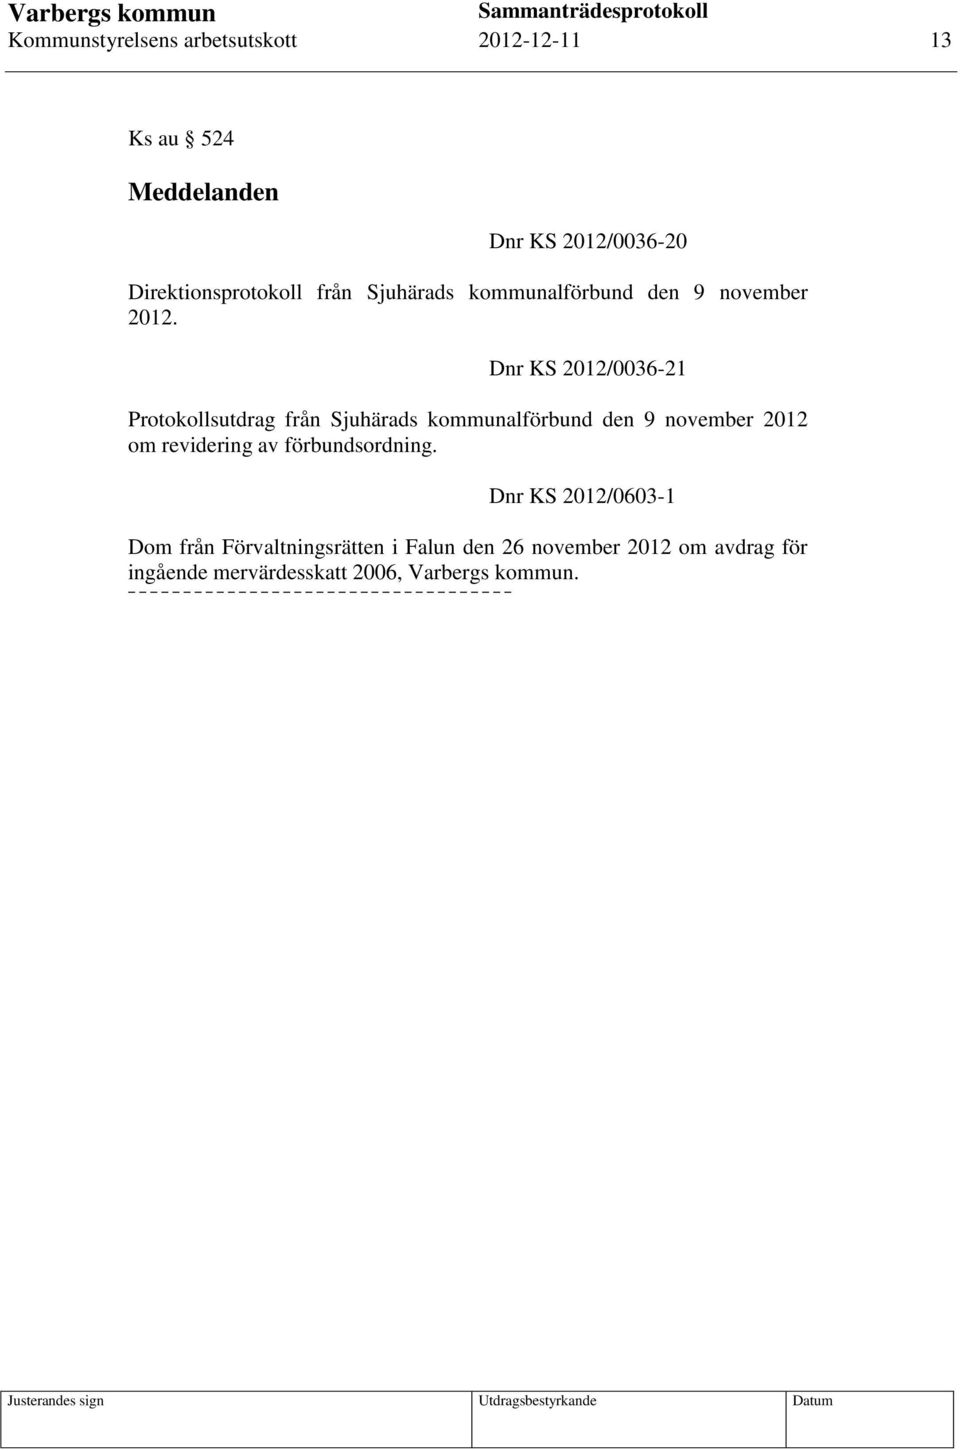 Dnr KS 2012/0036-21 Protokollsutdrag från Sjuhärads kommunalförbund den 9 november 2012 om revidering av